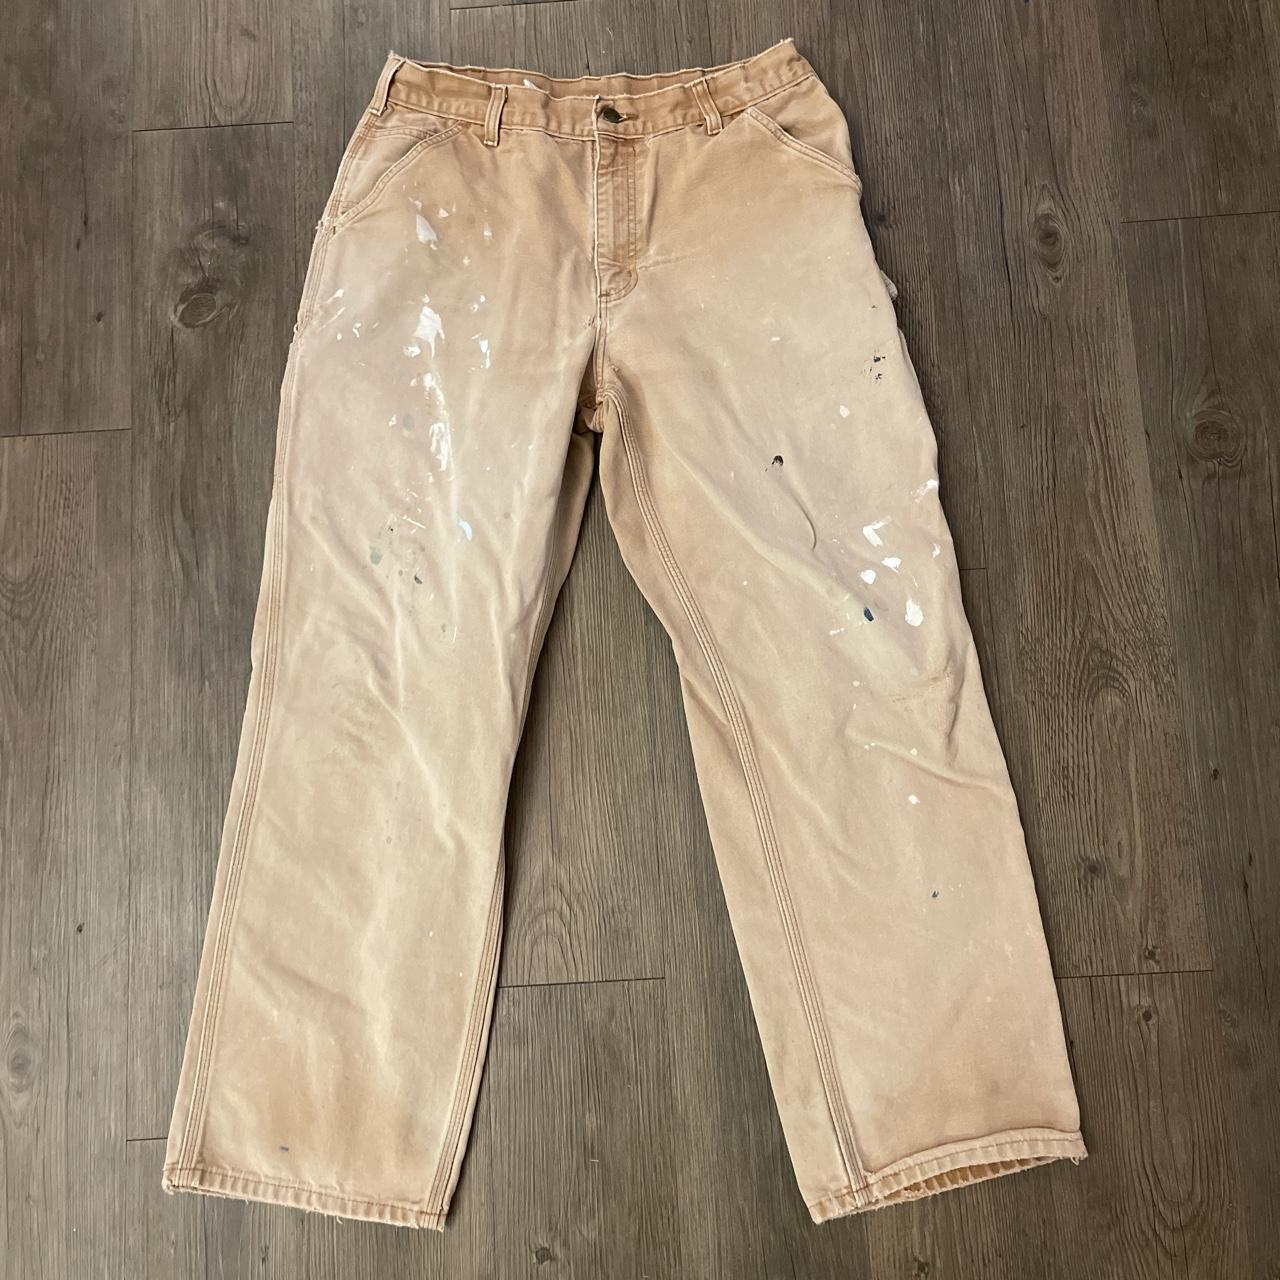 Vintage Carhartt Thrashed Denim Carpenter Jeans Size... - Depop